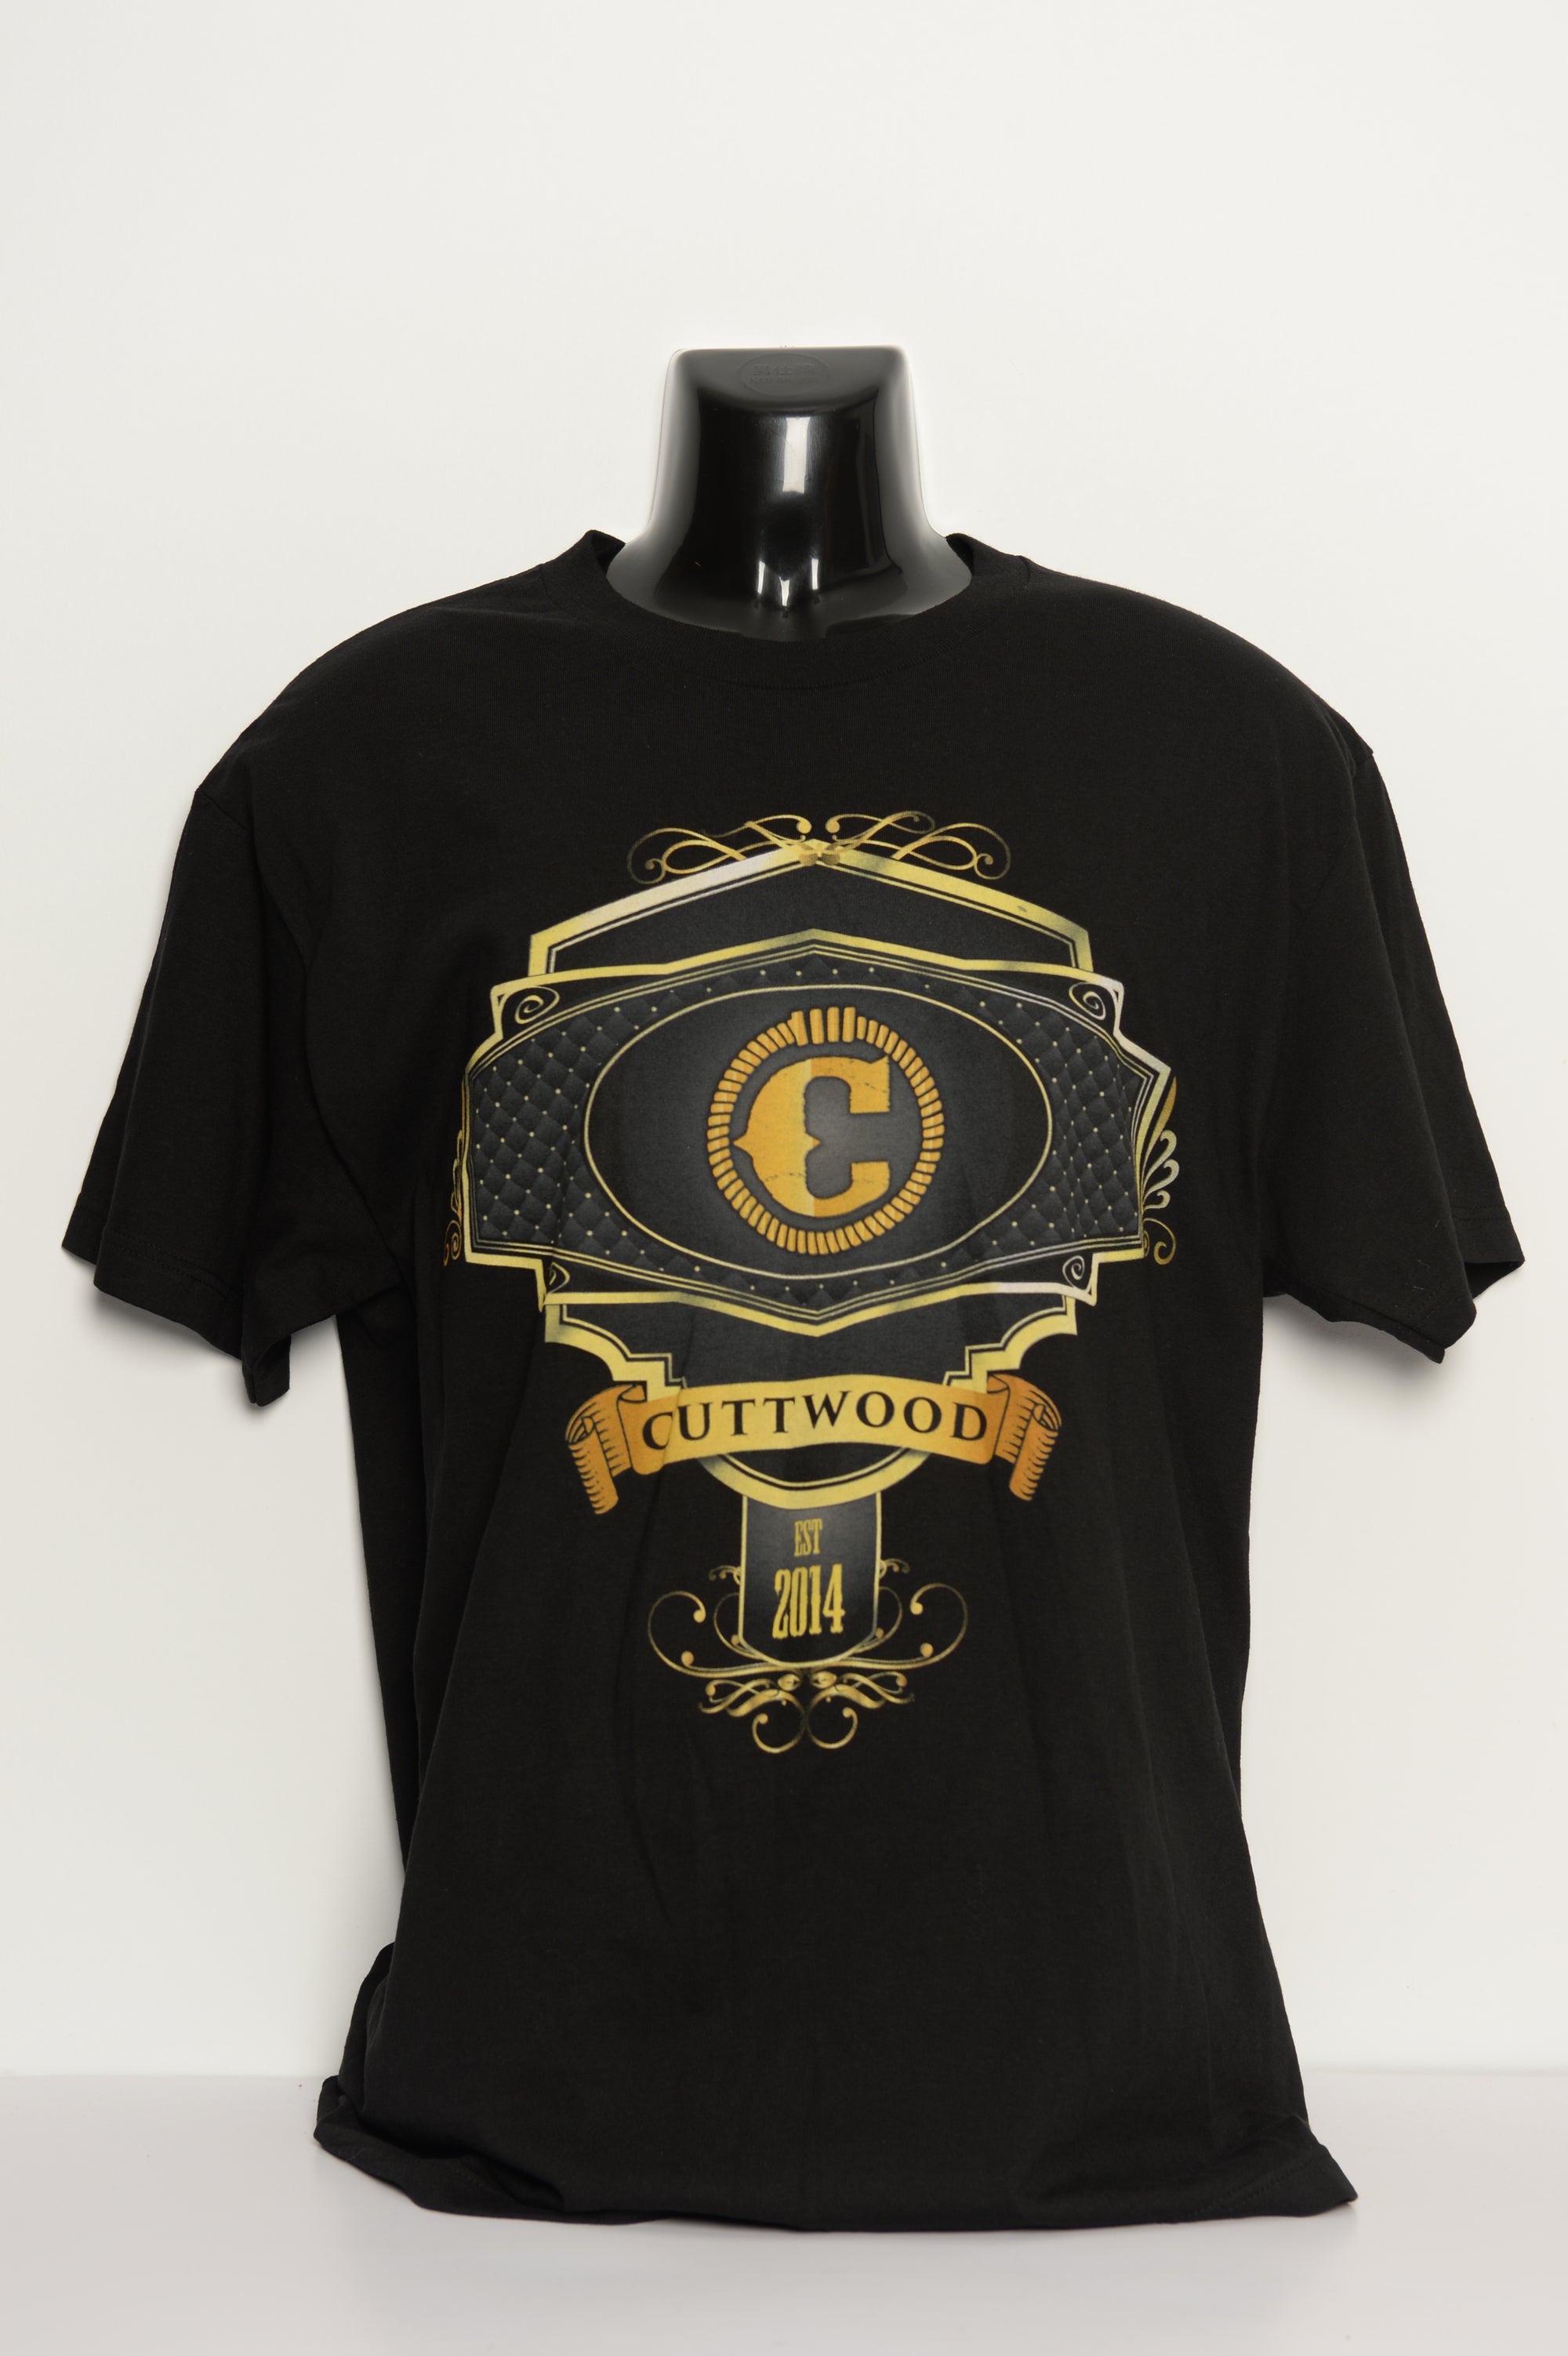  T-shirt • Cuttwood • Black w/ Gold L 